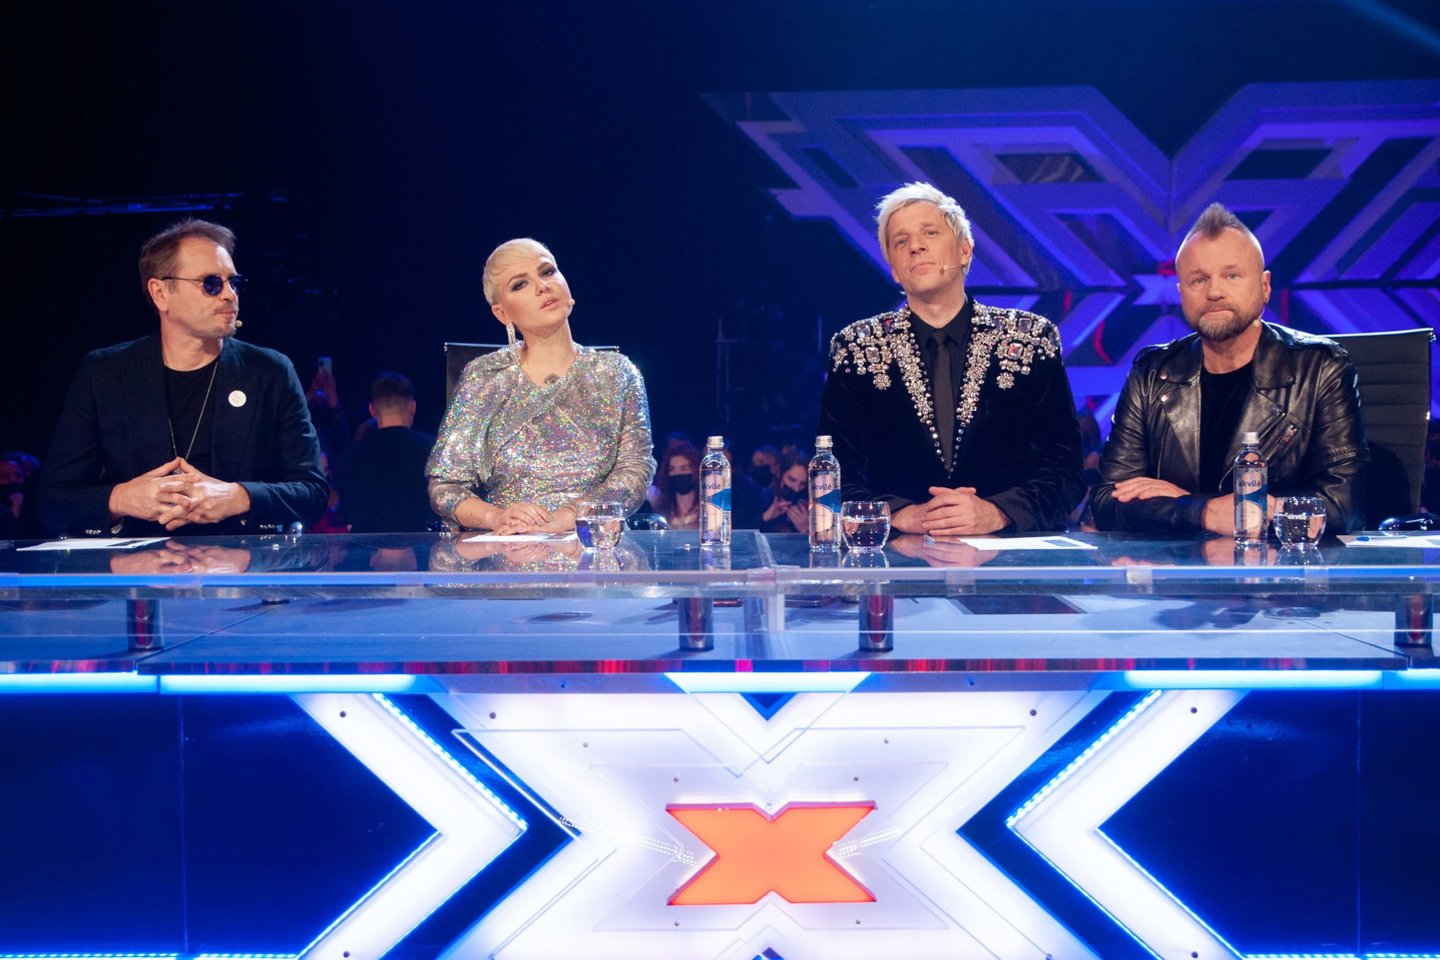  Sekmadienio vakarą nugriaudėjo dar vienas muzikinio TV3 projekto „X faktorius“ finalas.<br> V.Domkutės nuotr.